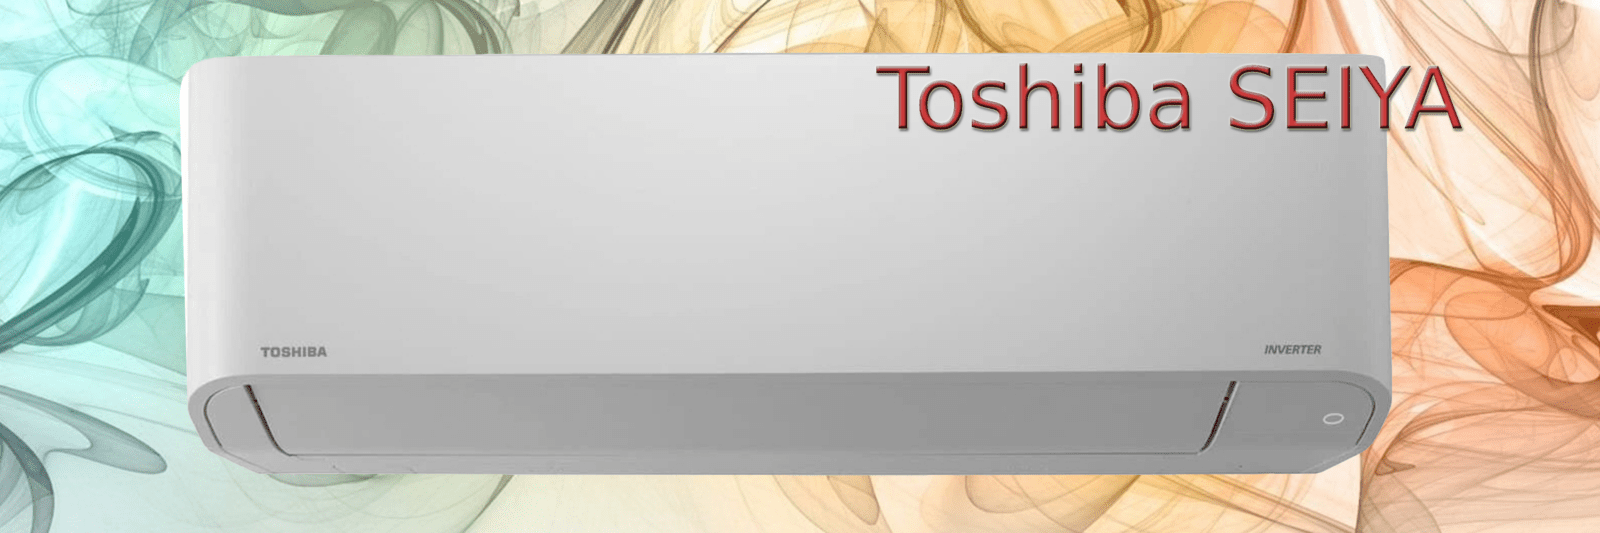 Toshiba Seiya